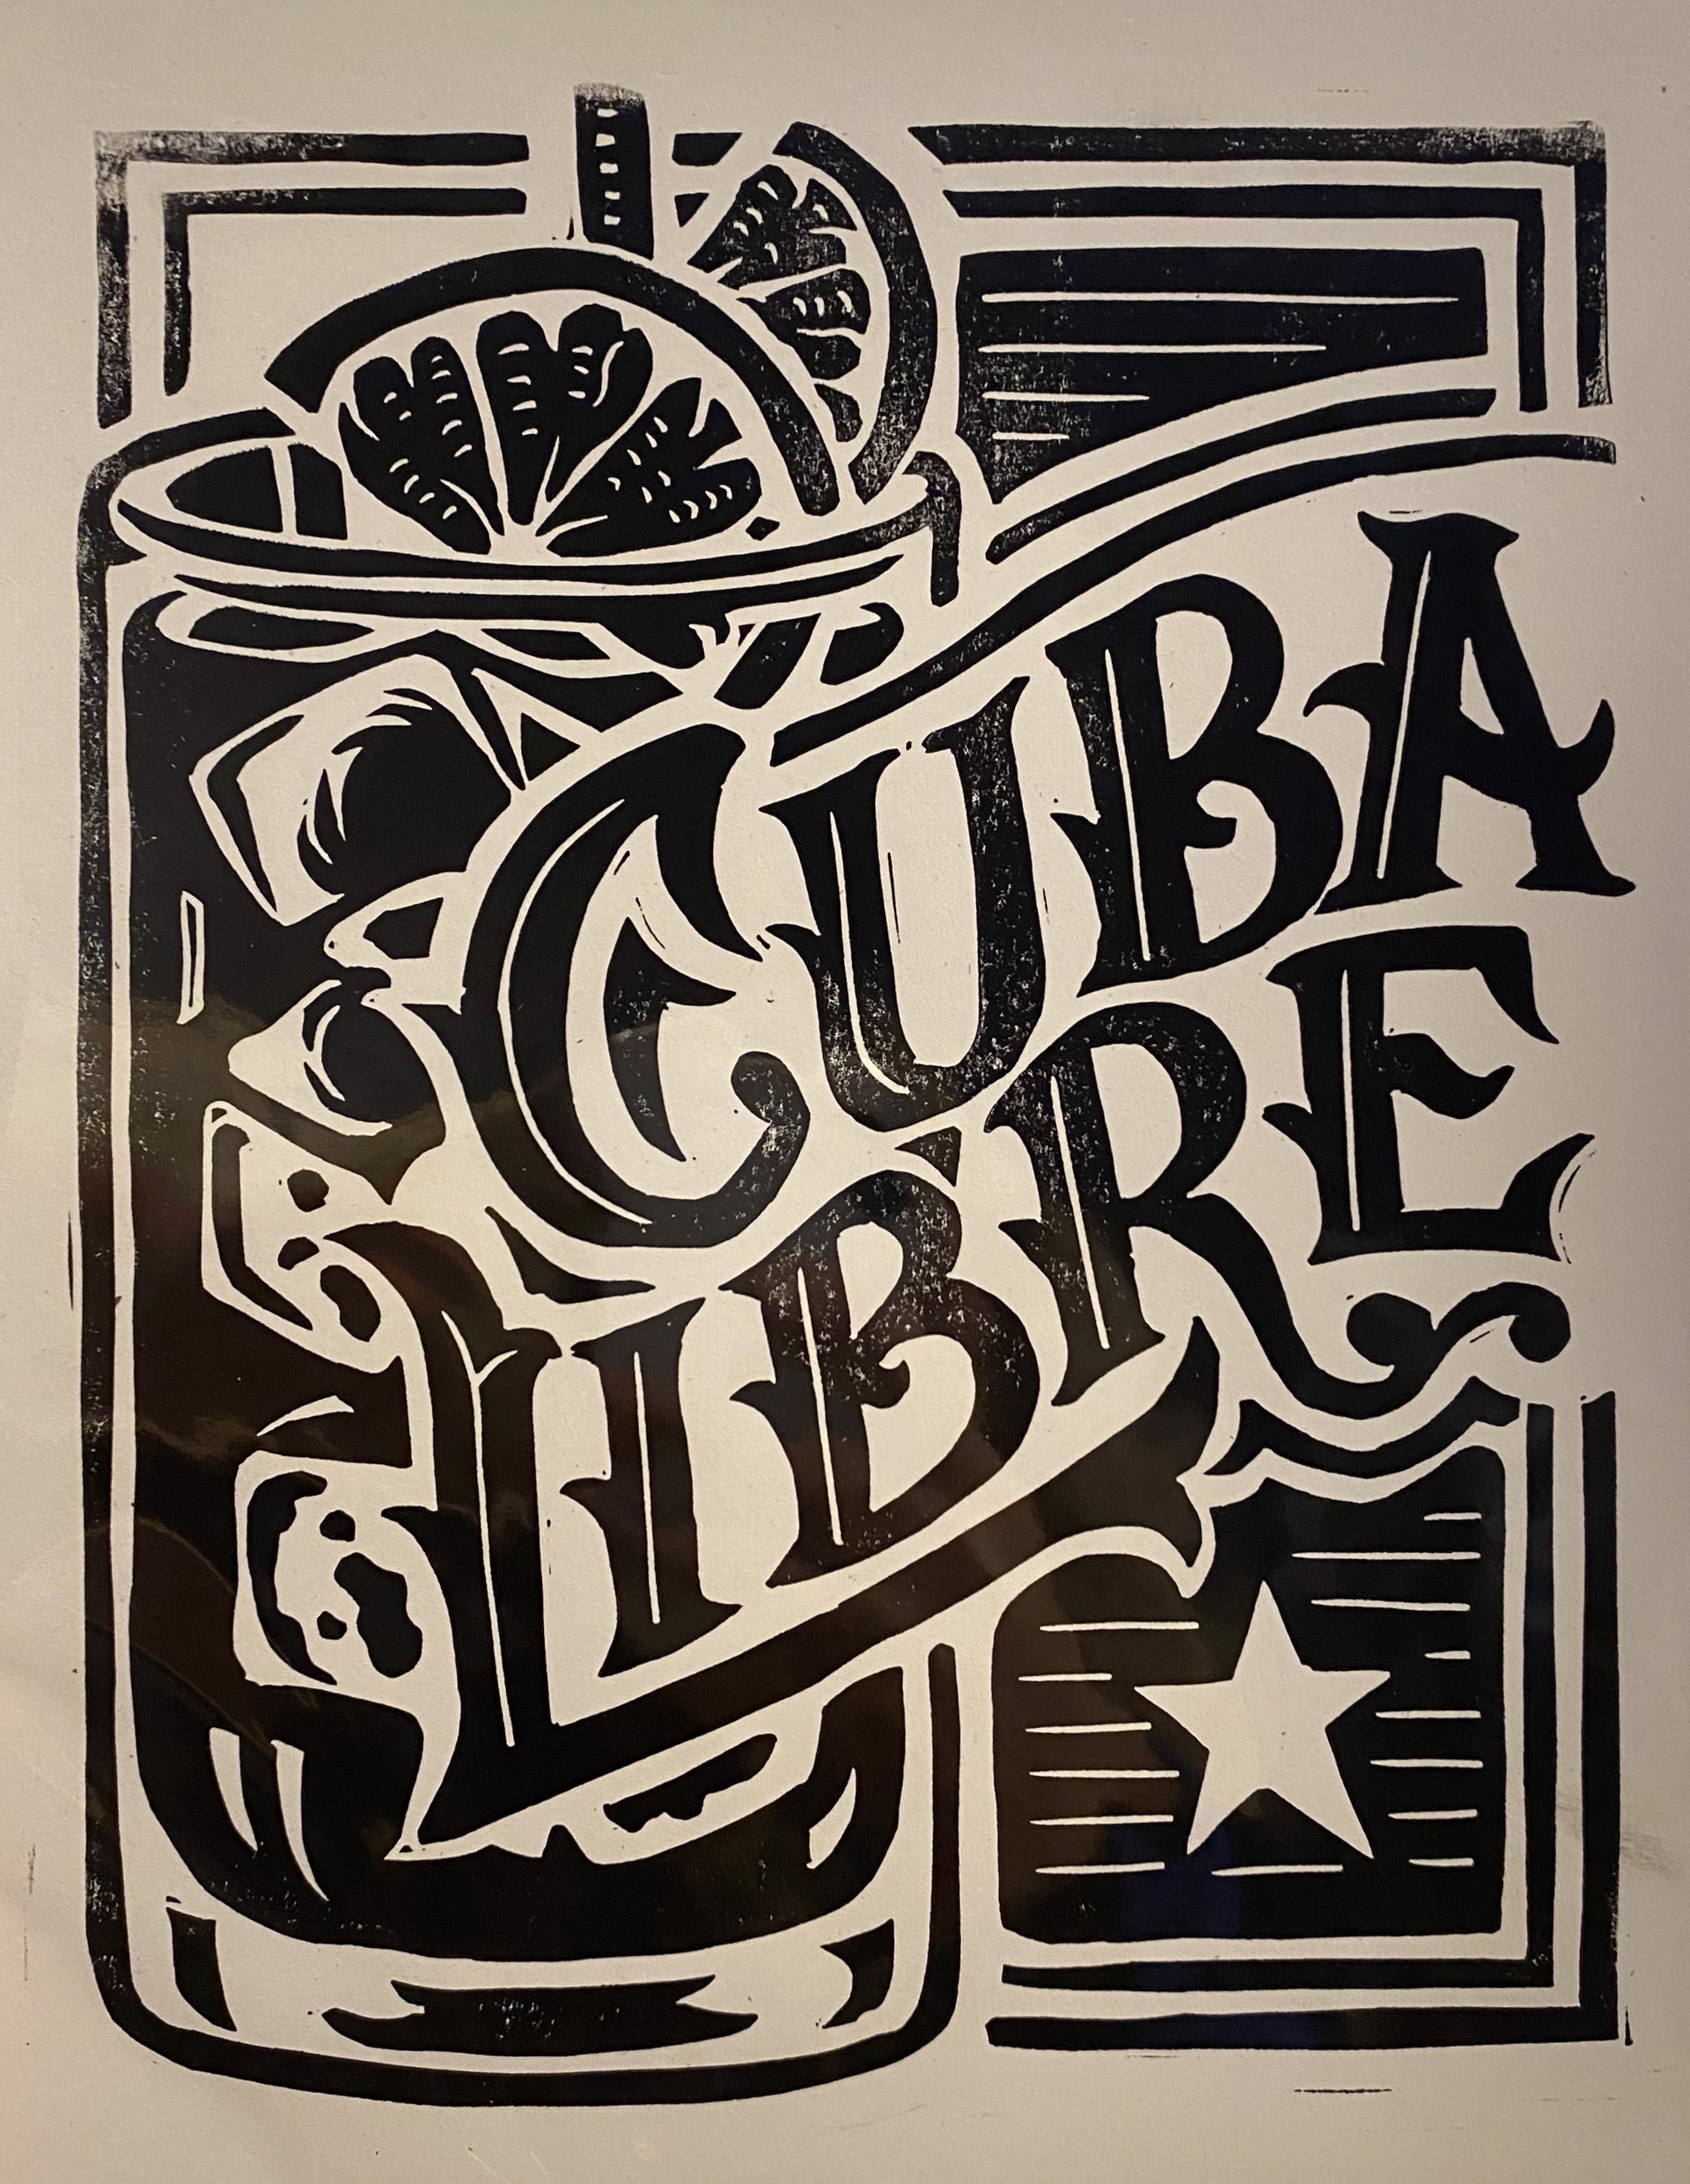 Cuba Libre by Derrick Castle